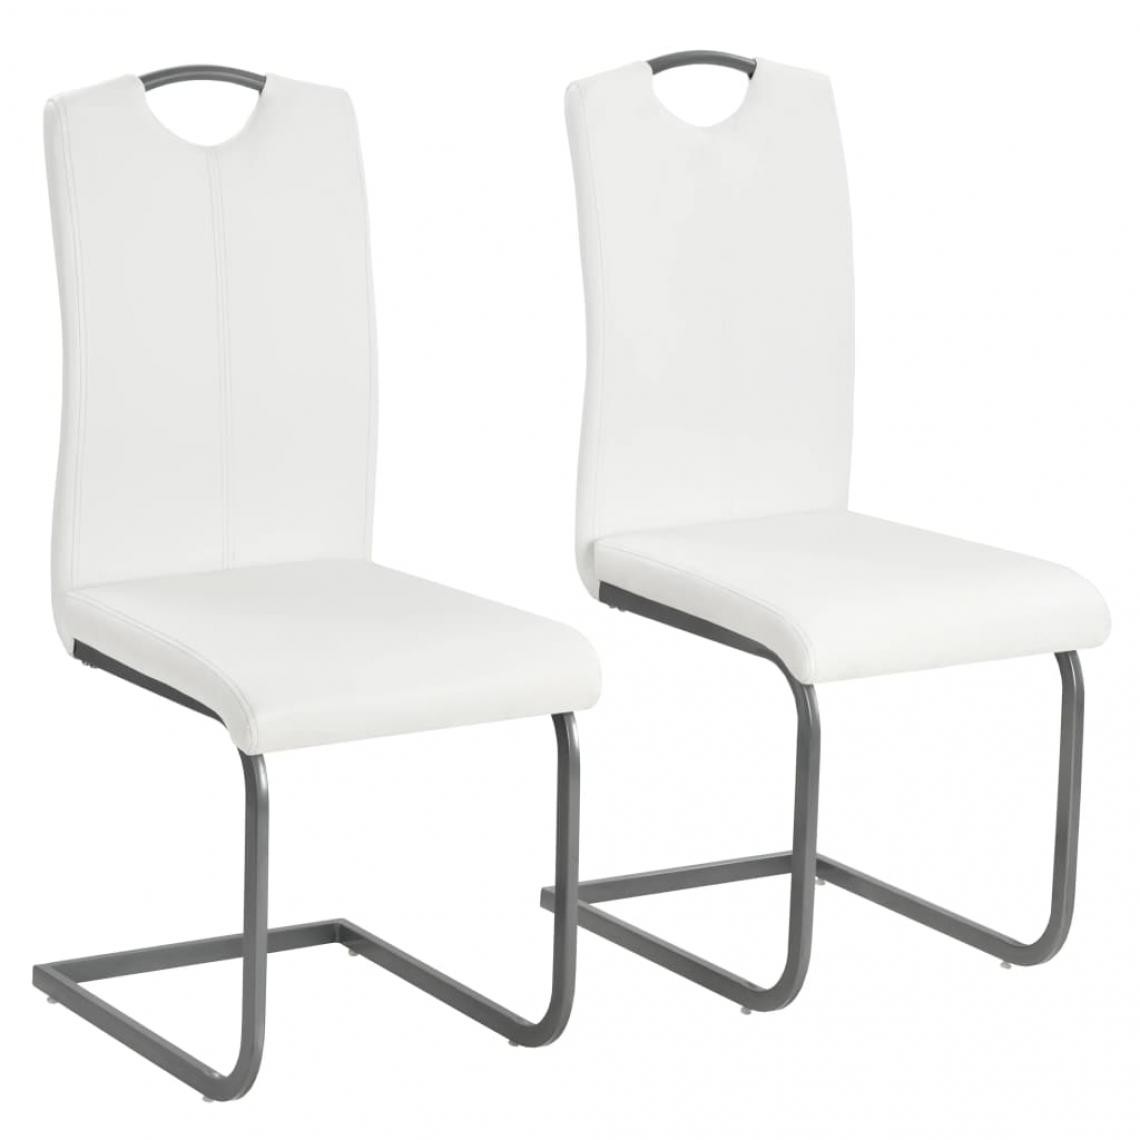 Decoshop26 - Lot de 2 chaises de salle à manger cuisine cantilever design moderne similicuir blanc CDS020303 - Chaises